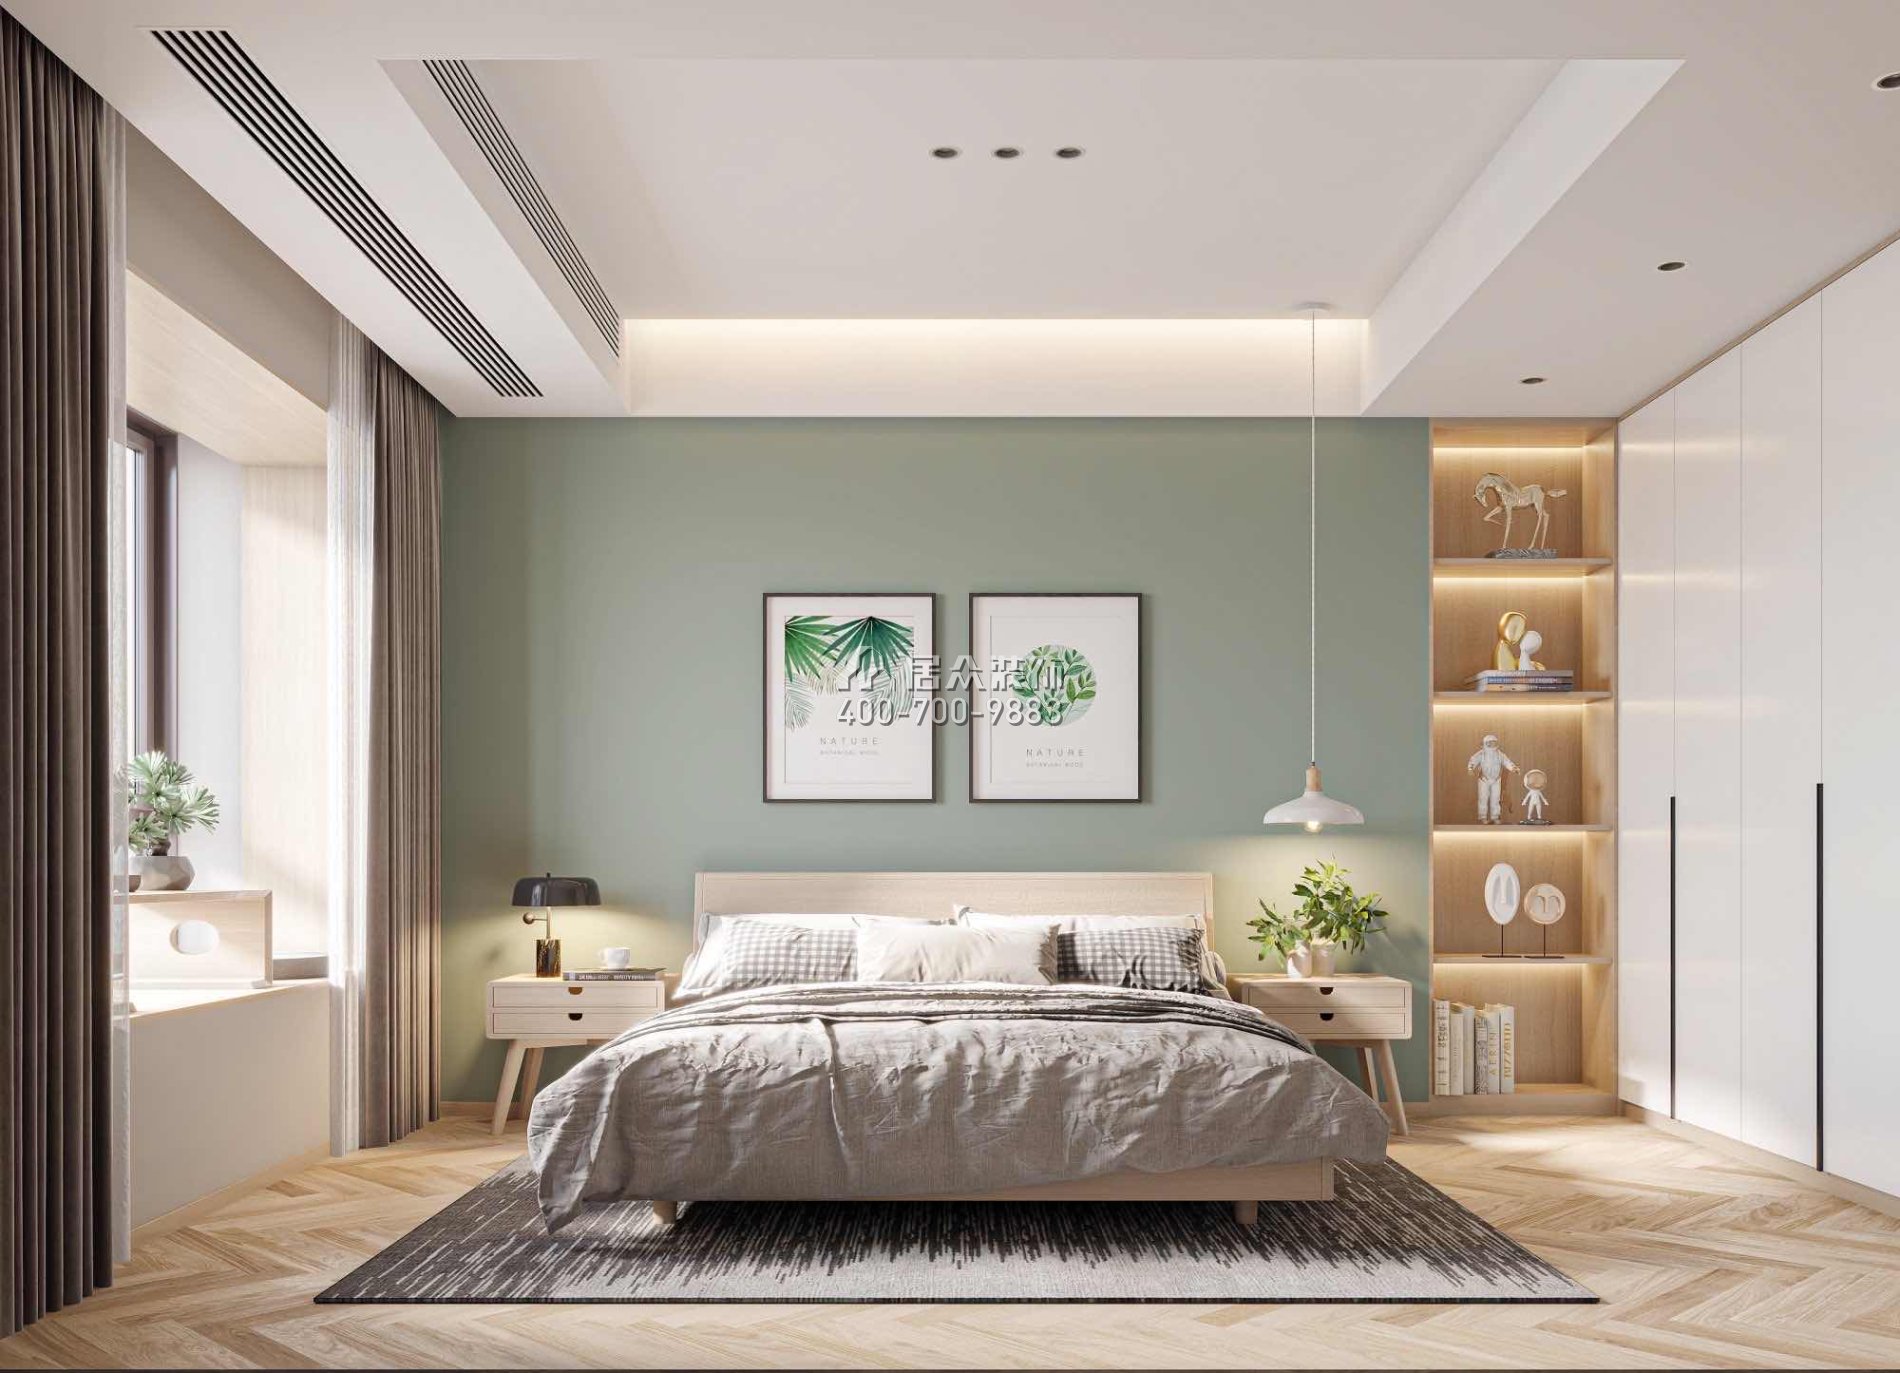 恒裕水墨兰亭370平方米中式风格复式户型卧室开元官网效果图